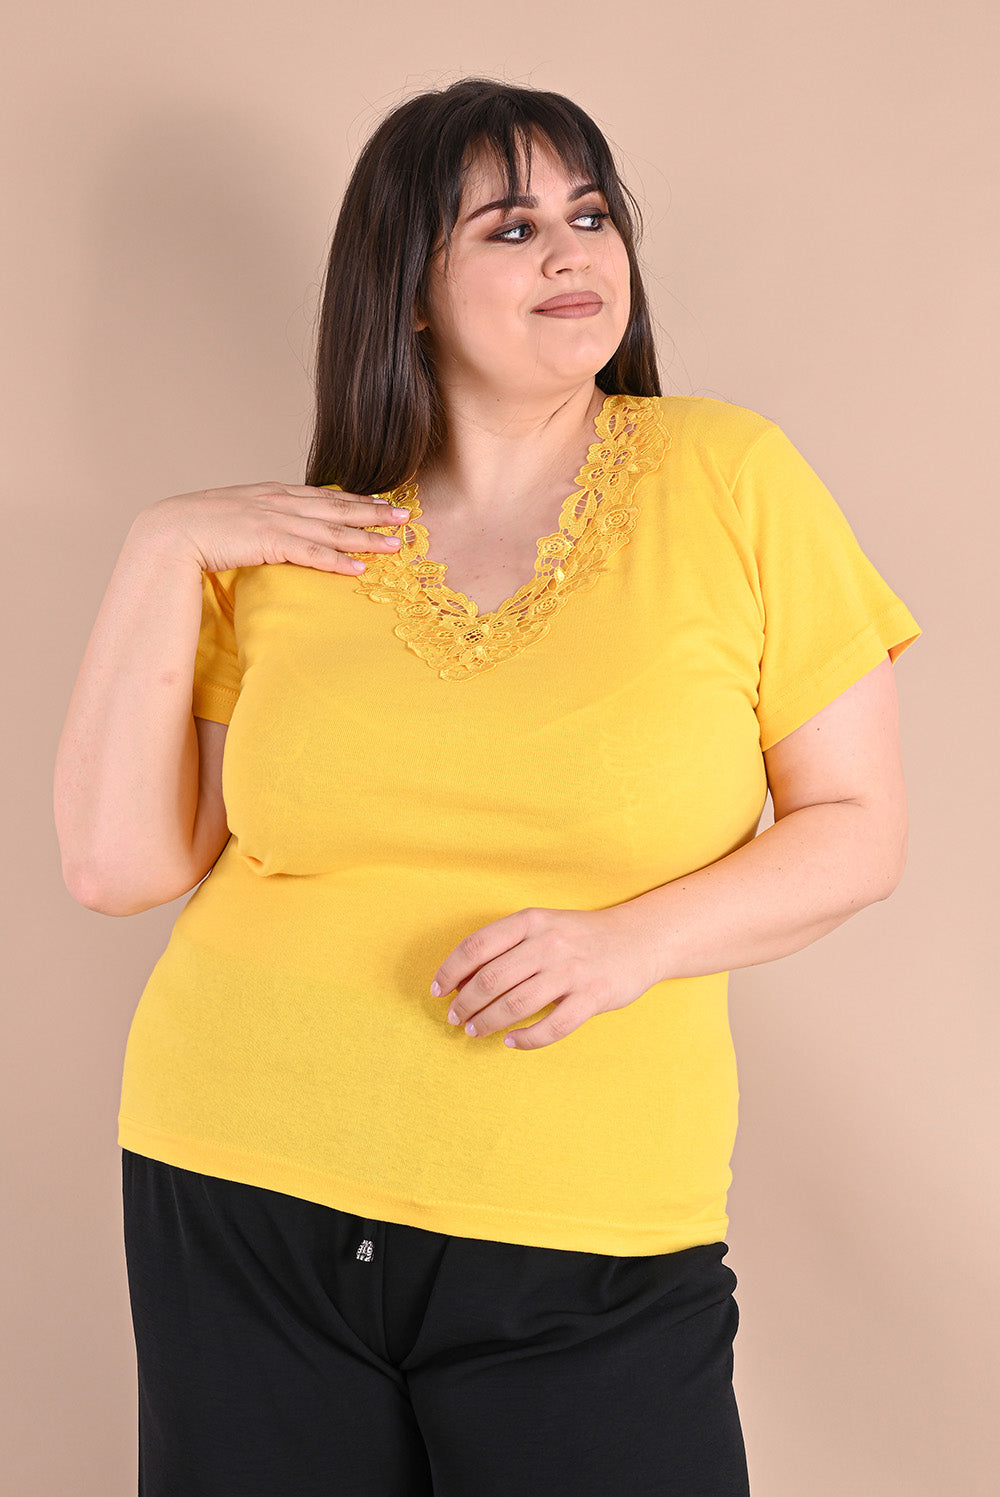 Κίτρινη βαμβακερή μπλούζα με δαντέλα σε μεγάλα μεγέθη